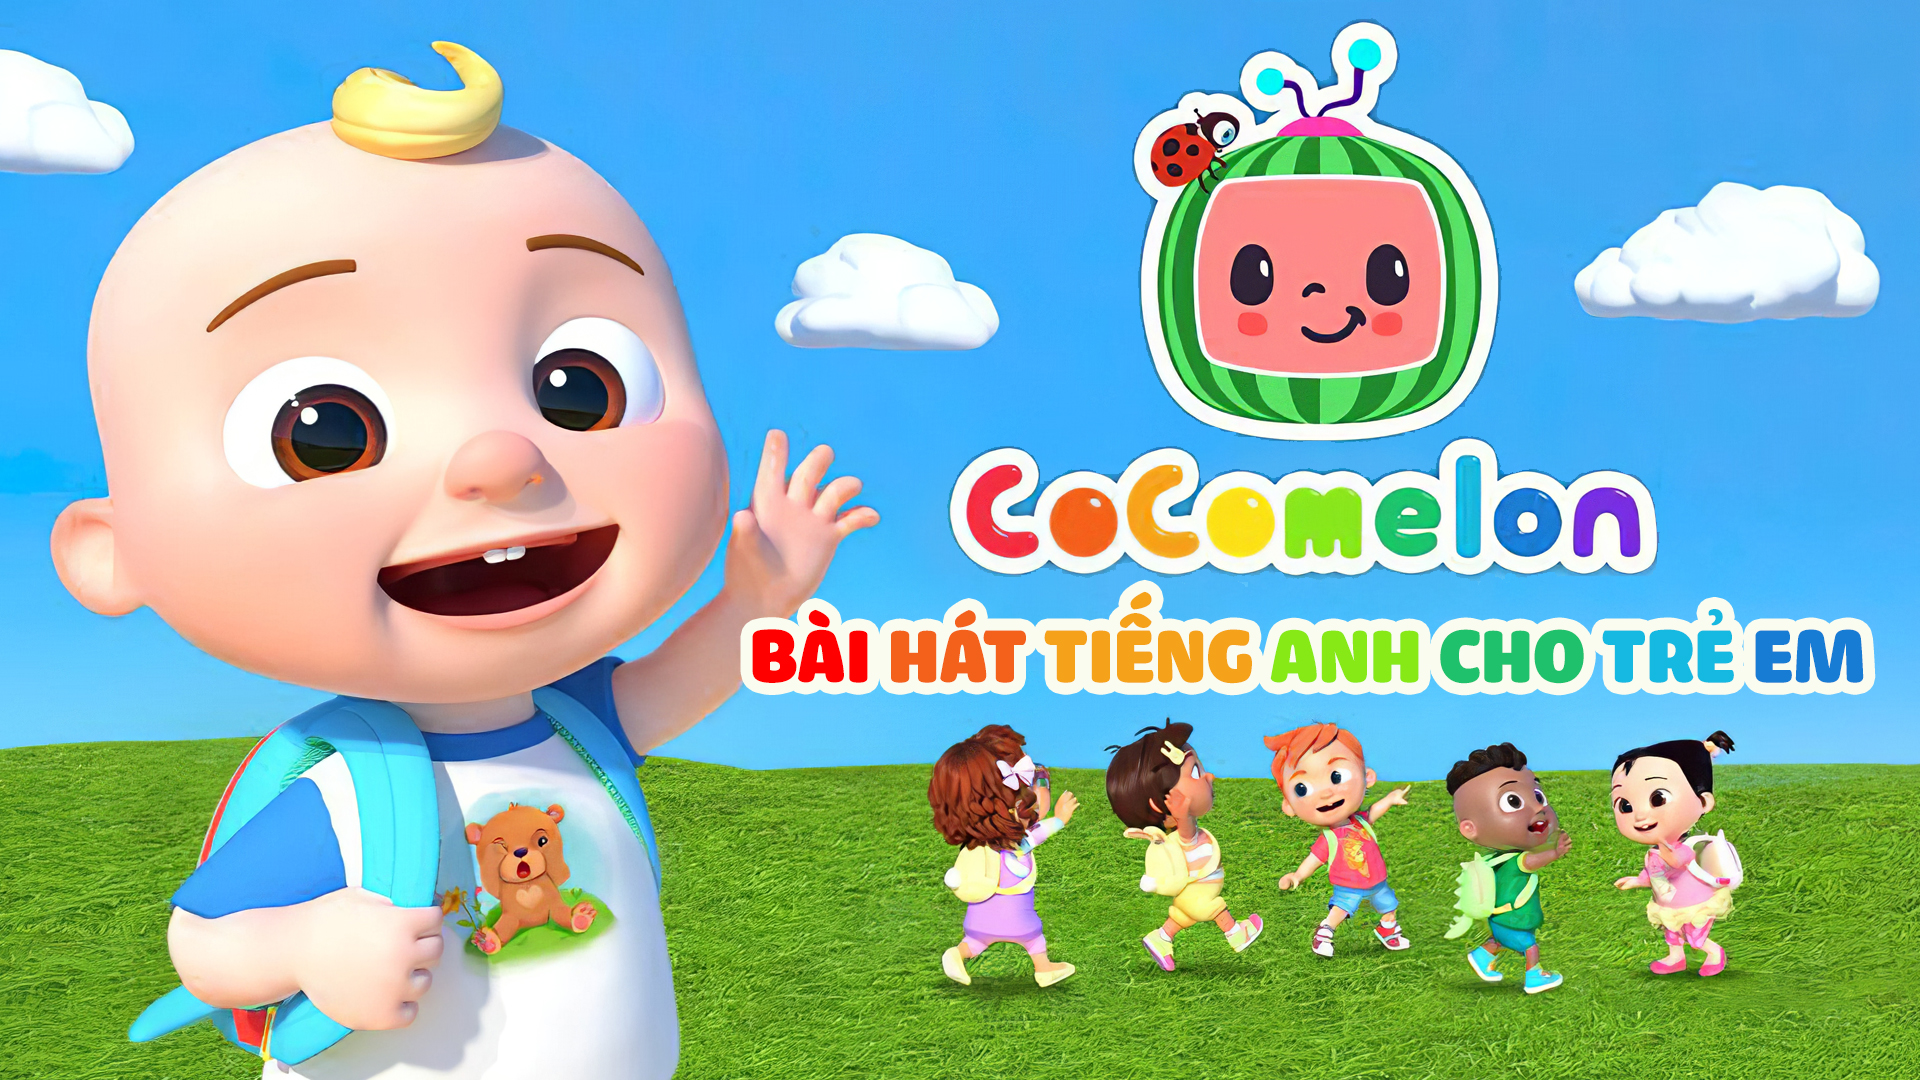 Cocomelon - Bài Hát Tiếng Anh Cho Trẻ Em - Five Senses Song | FPT Play